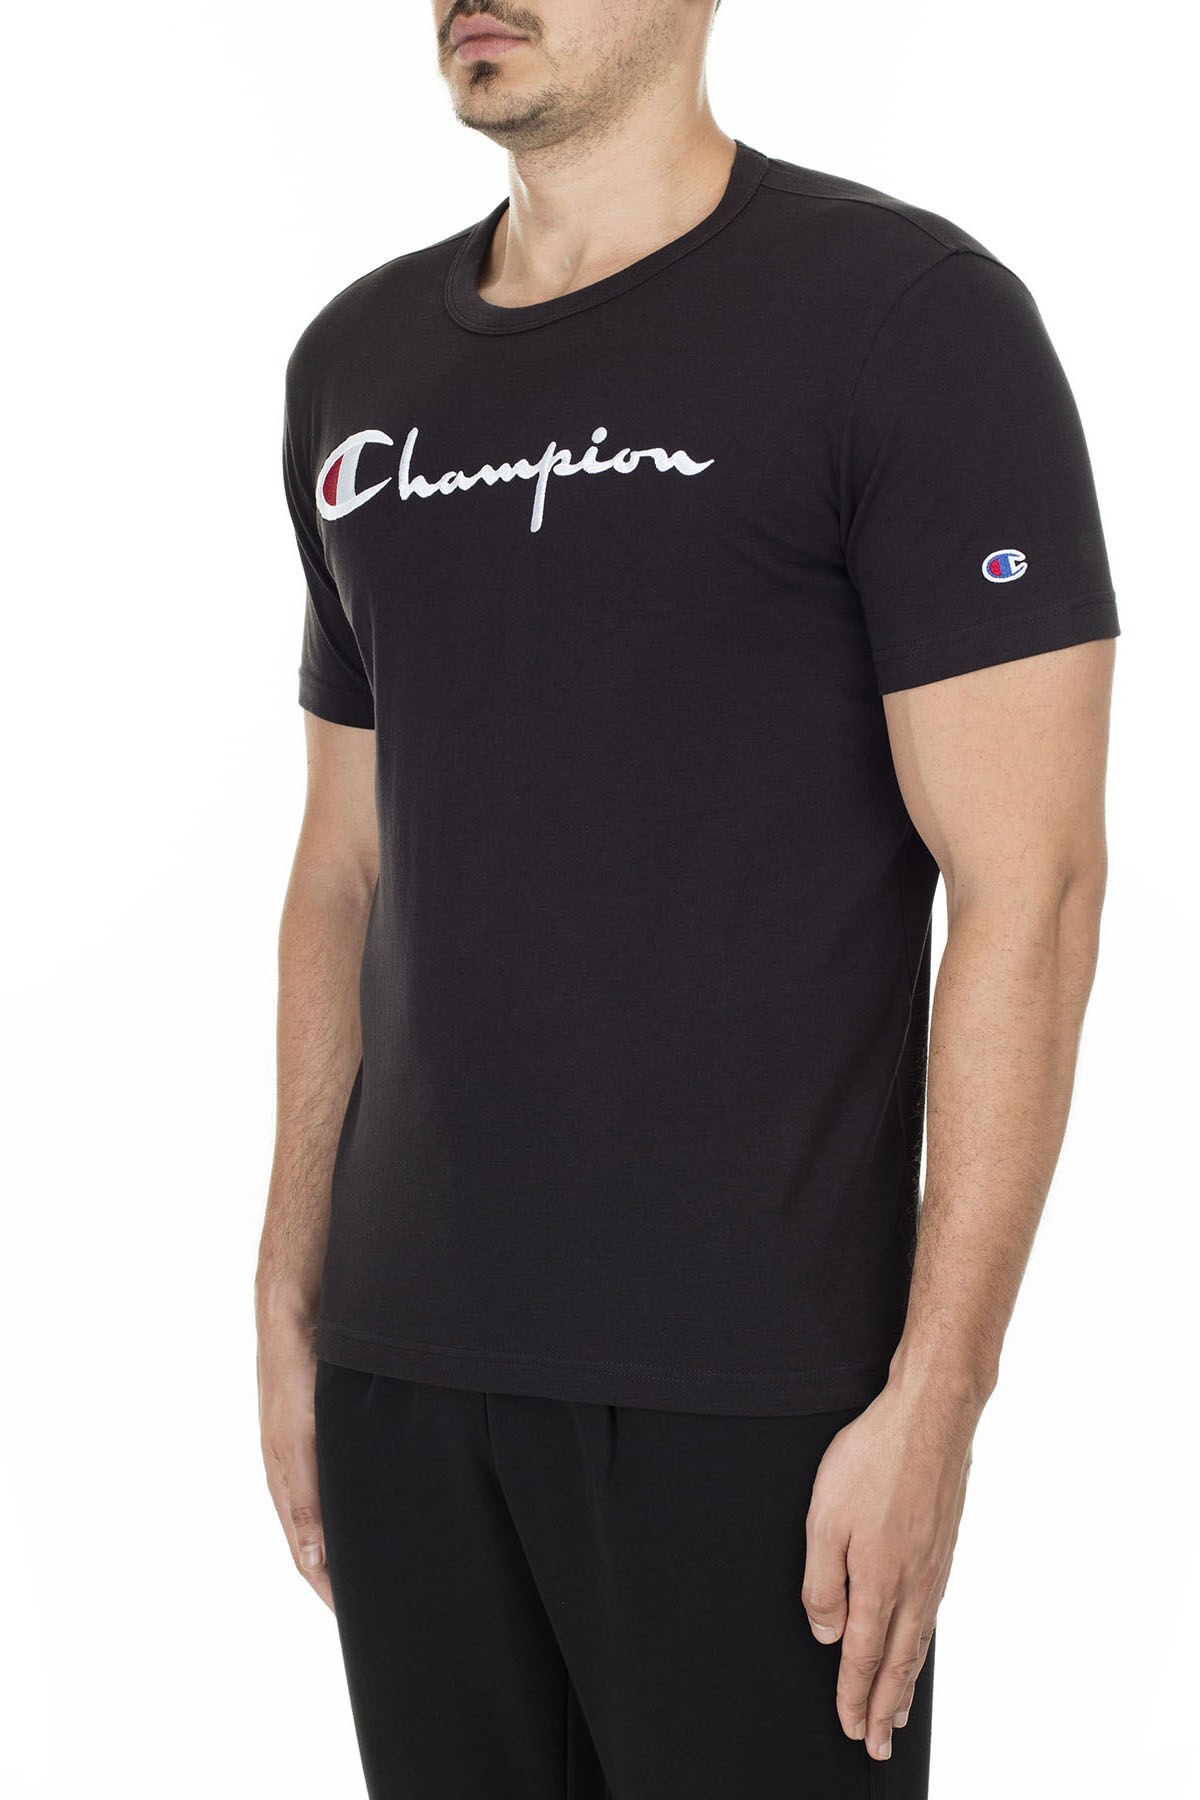 Champion İşlemeli Yazı Logolu Bisiklet Yaka Erkek T Shirt 210972 KK001 NBK SİYAH